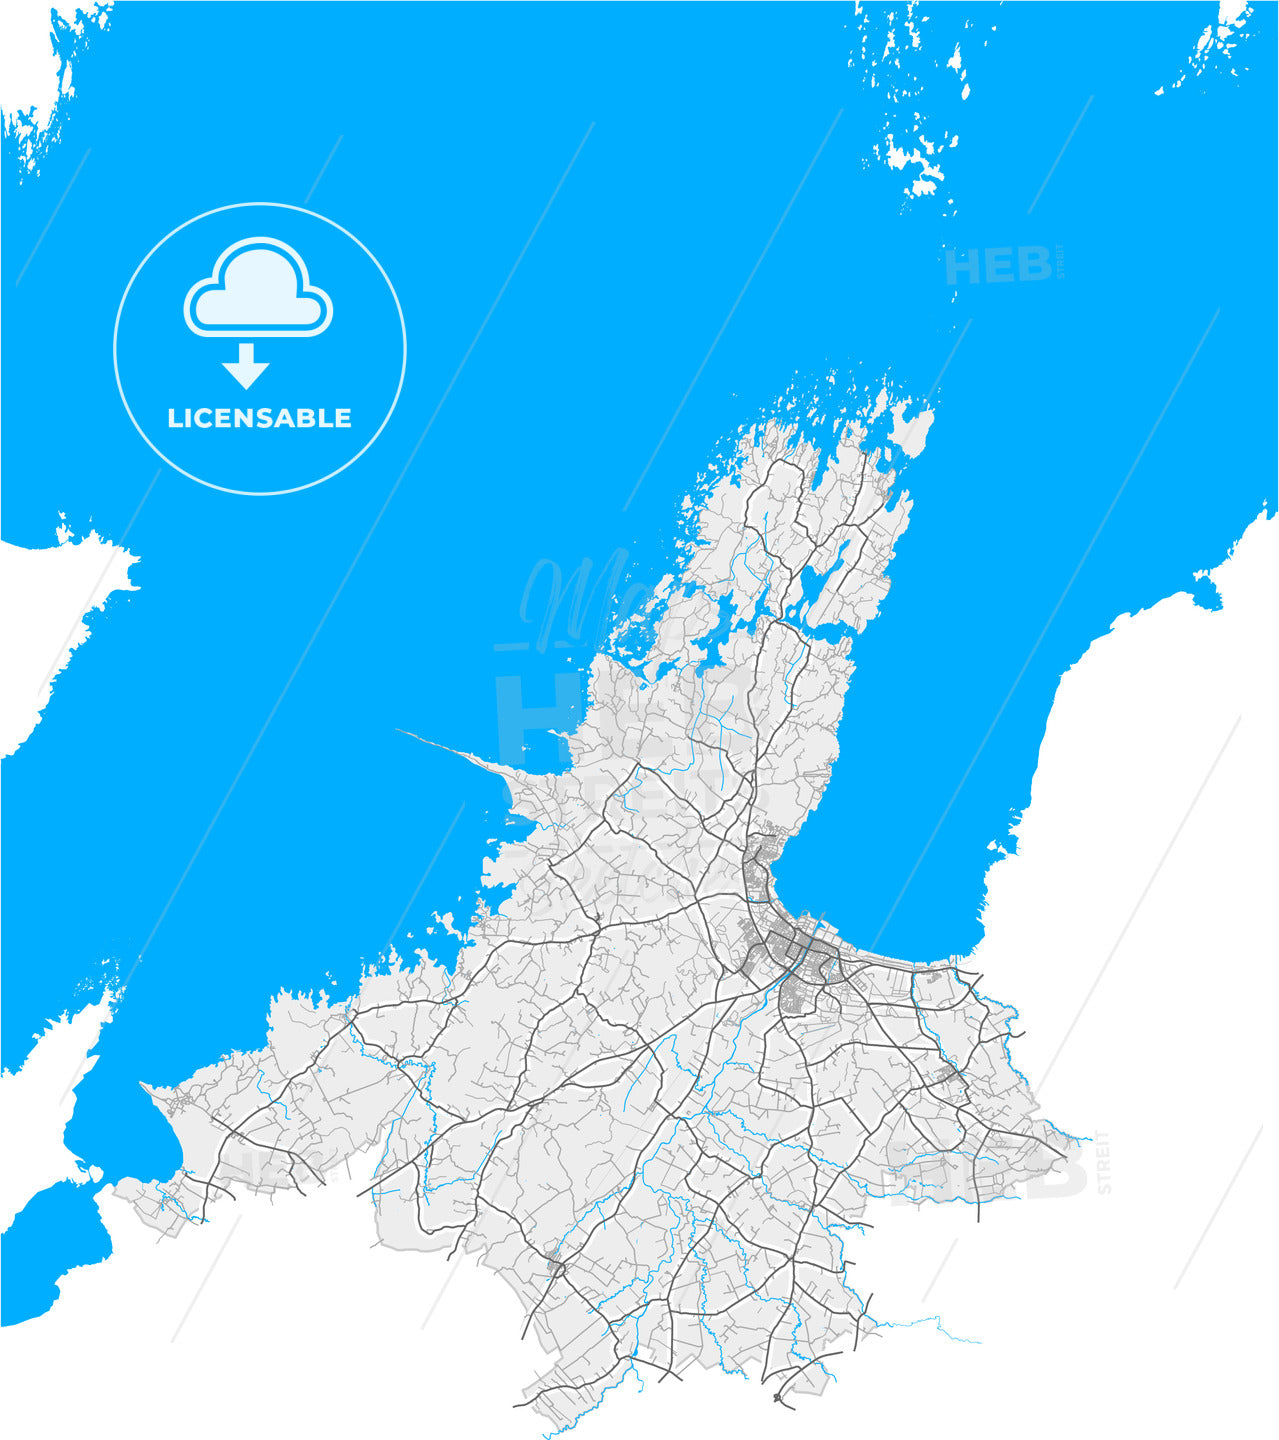 Lidköping, Sweden, high quality vector map